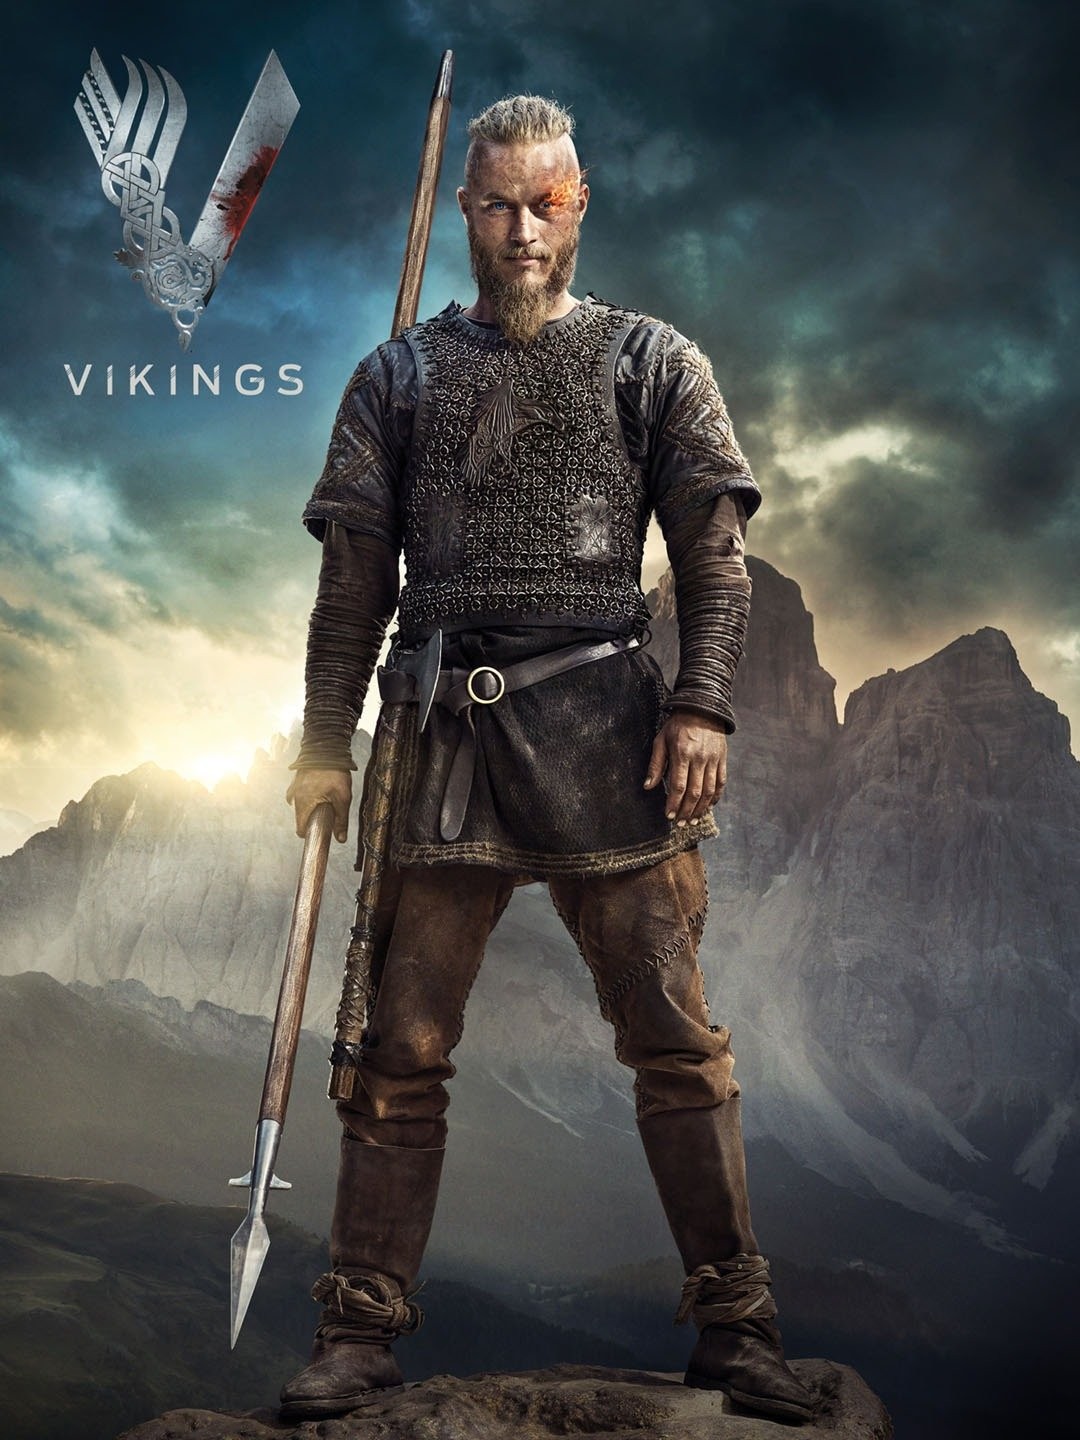 Vikings Season 2